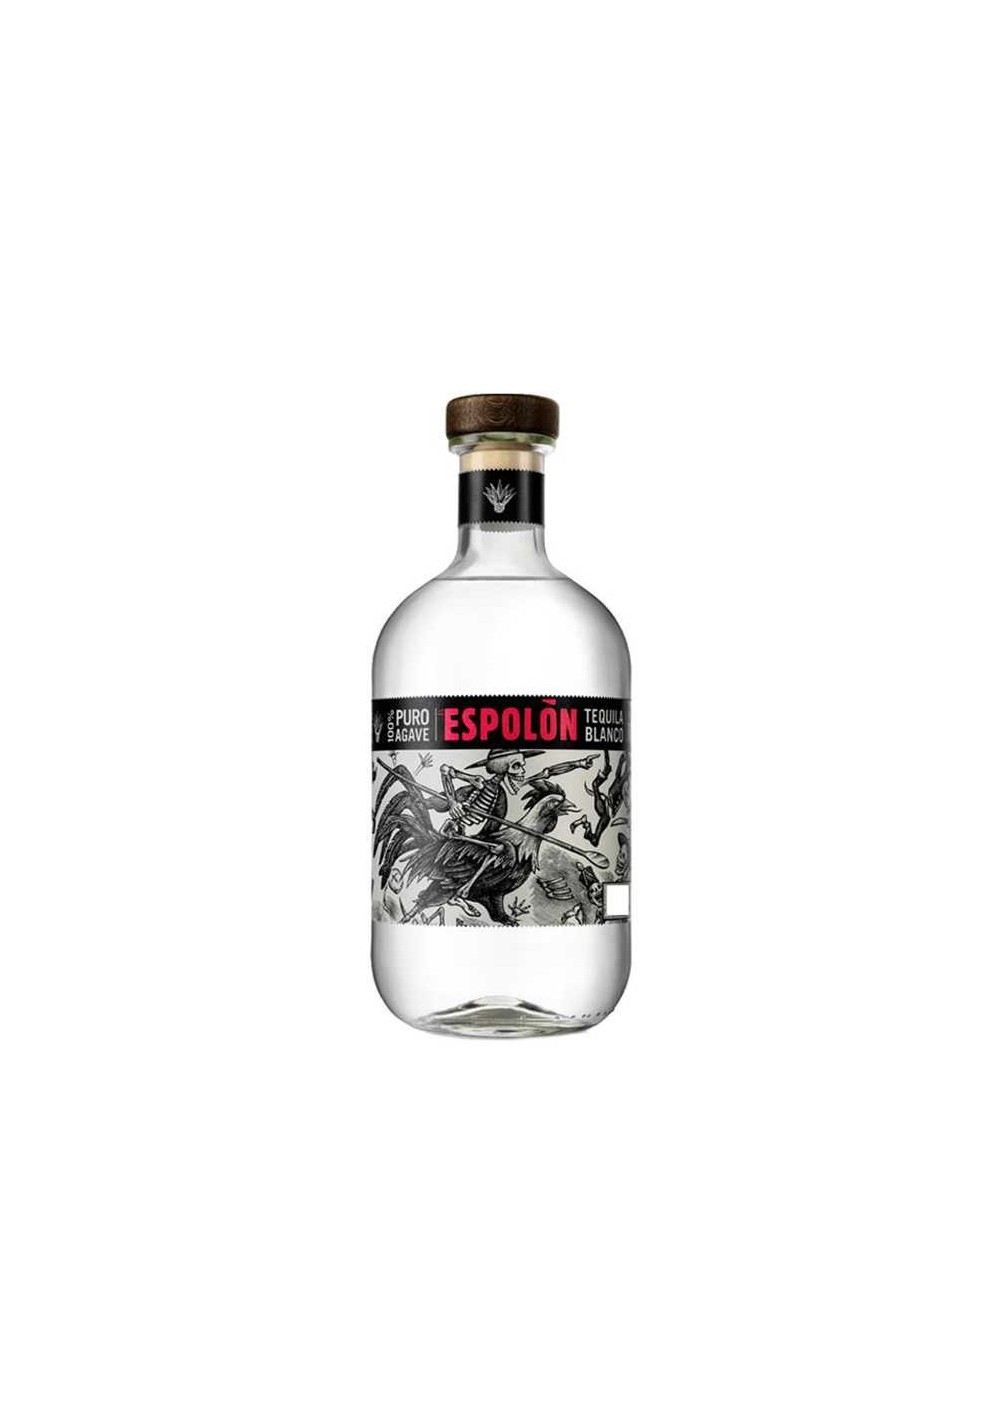 Espolon - Tequila Blanco - (70cl)